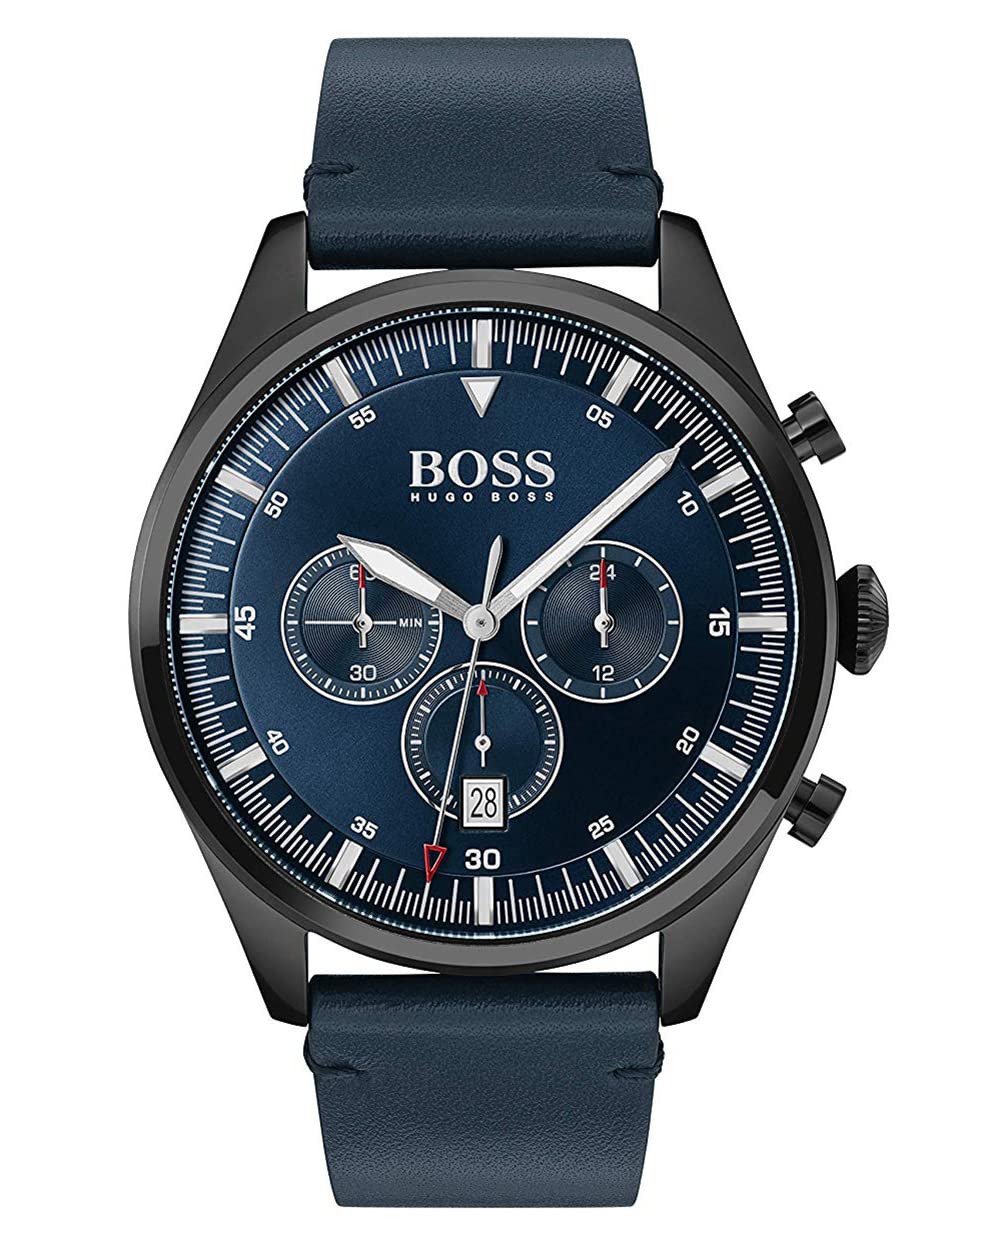 BOSS Chronograph Quarz Uhr für Herren mit Blaues Lederarmband - 1513711